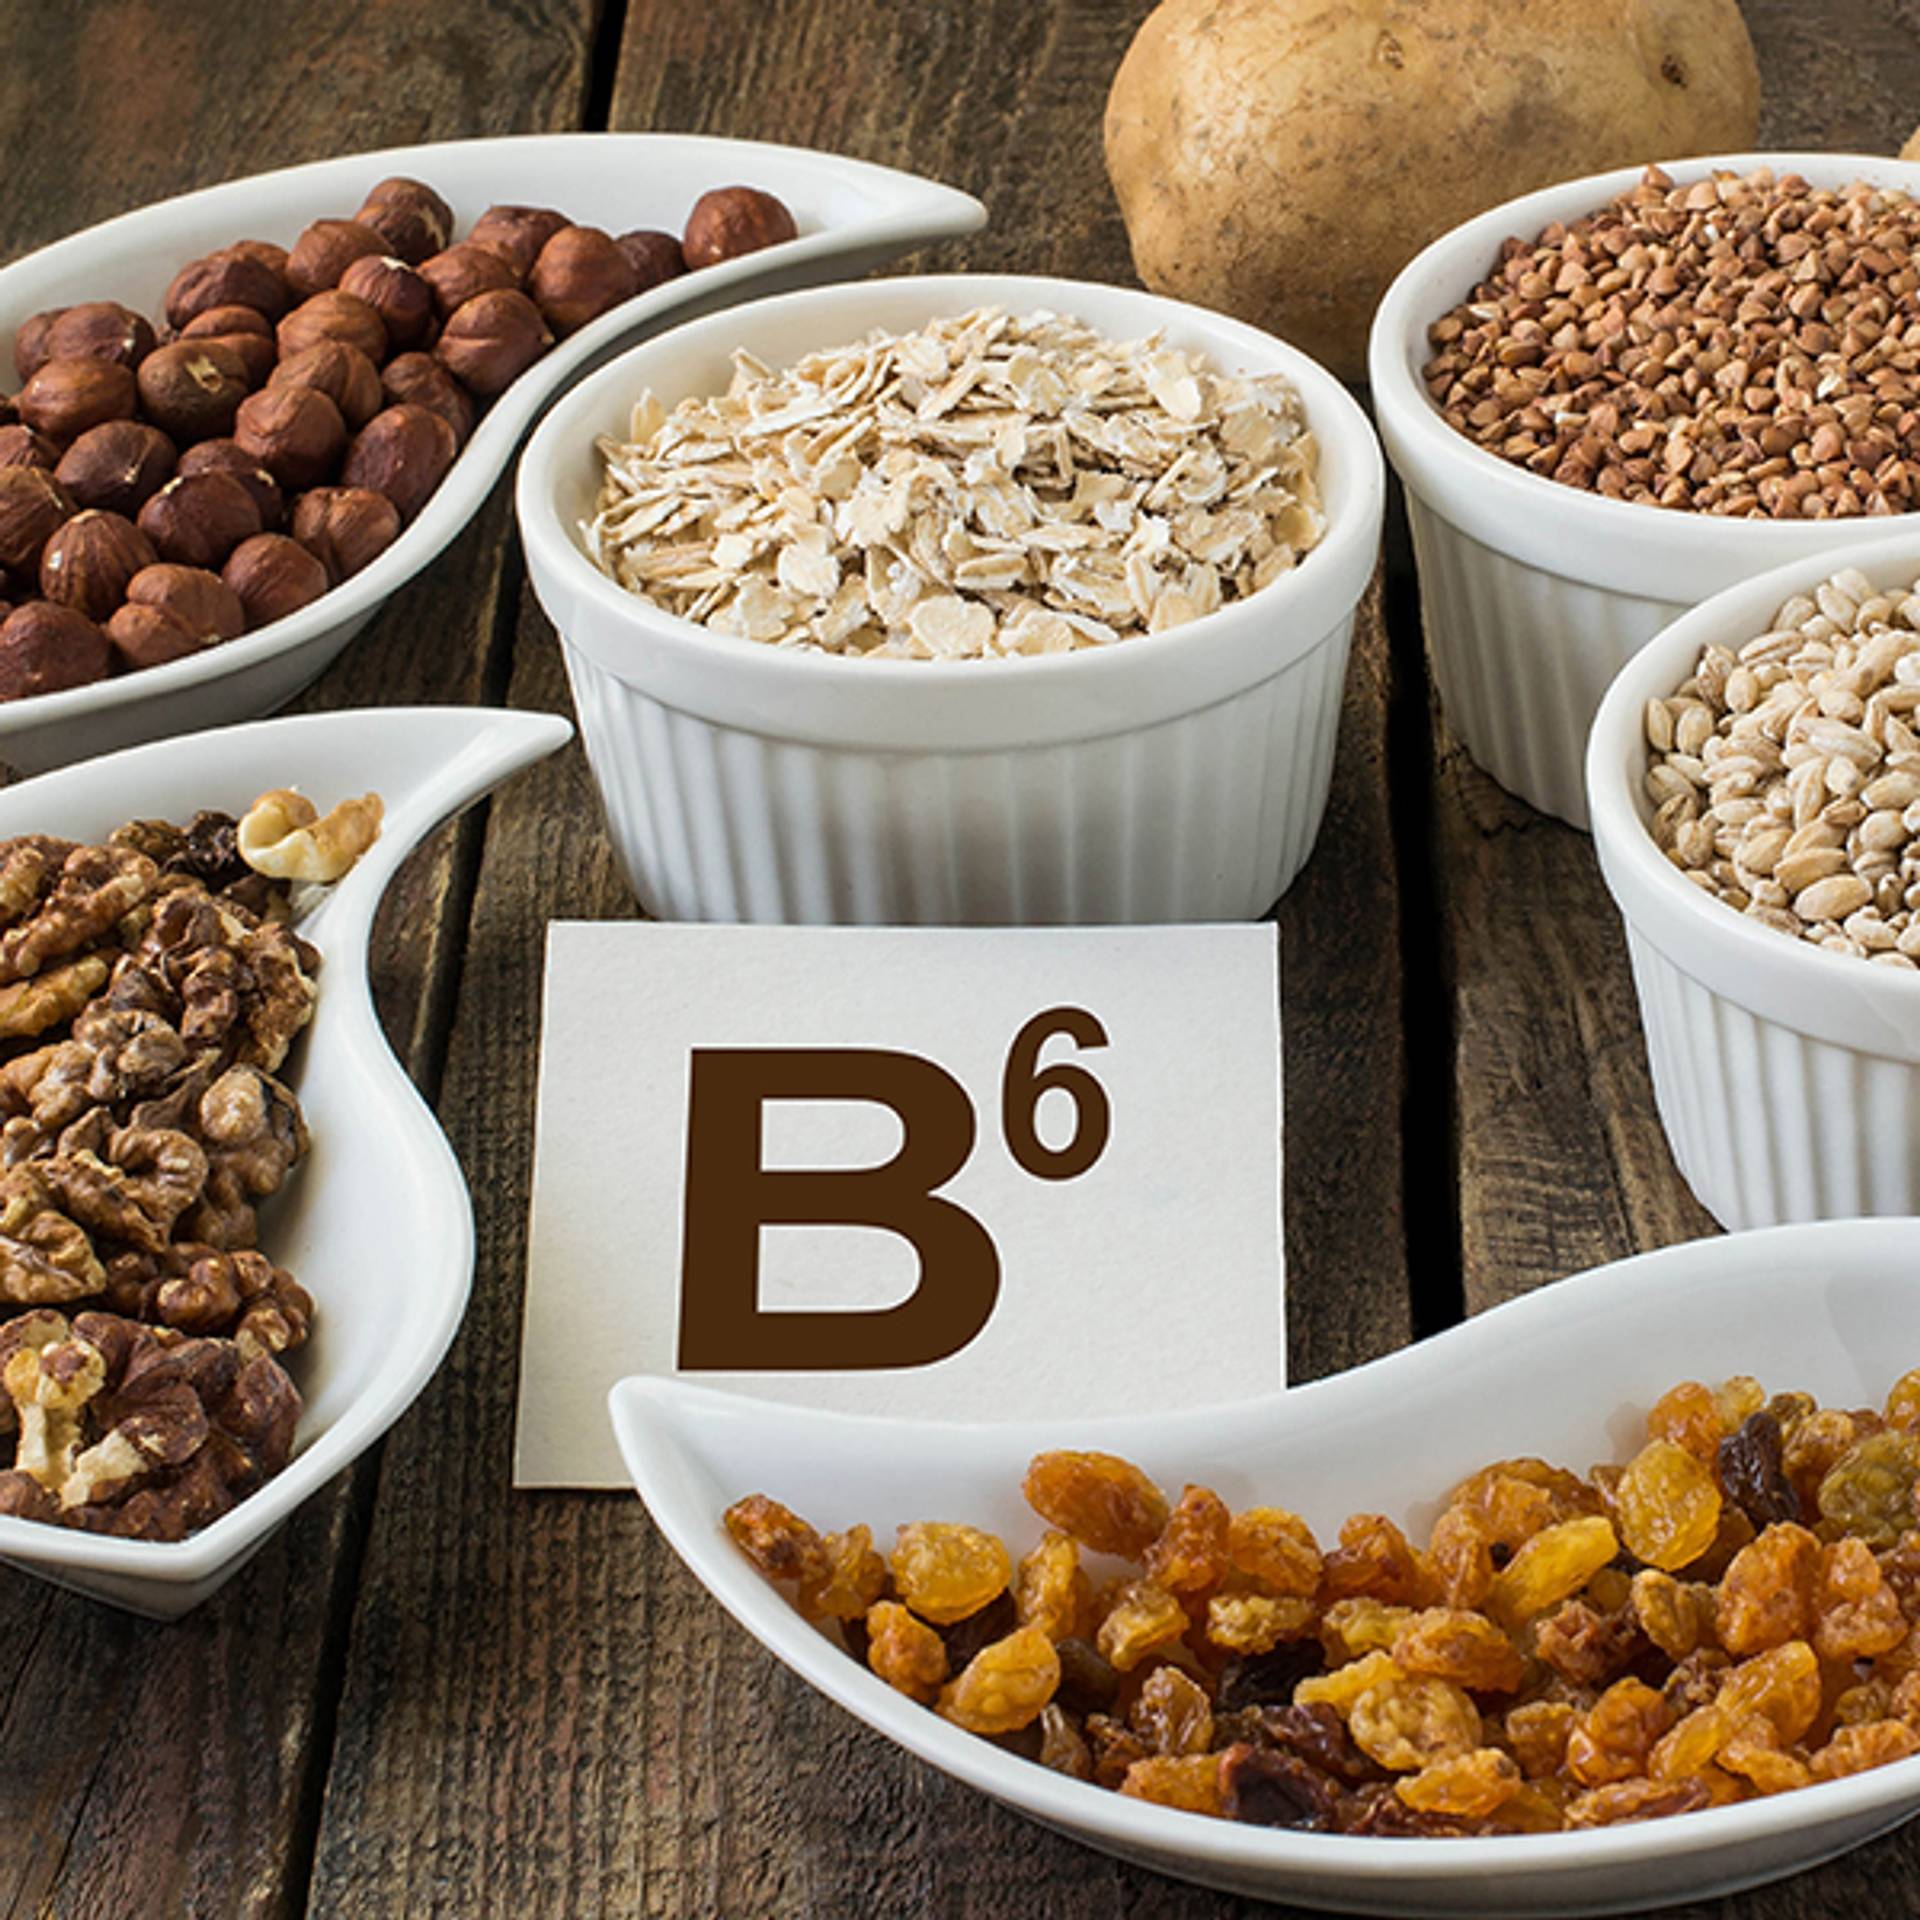 Eine gesunde Ernährung mit Vitamin B6-reichen Lebensmitteln